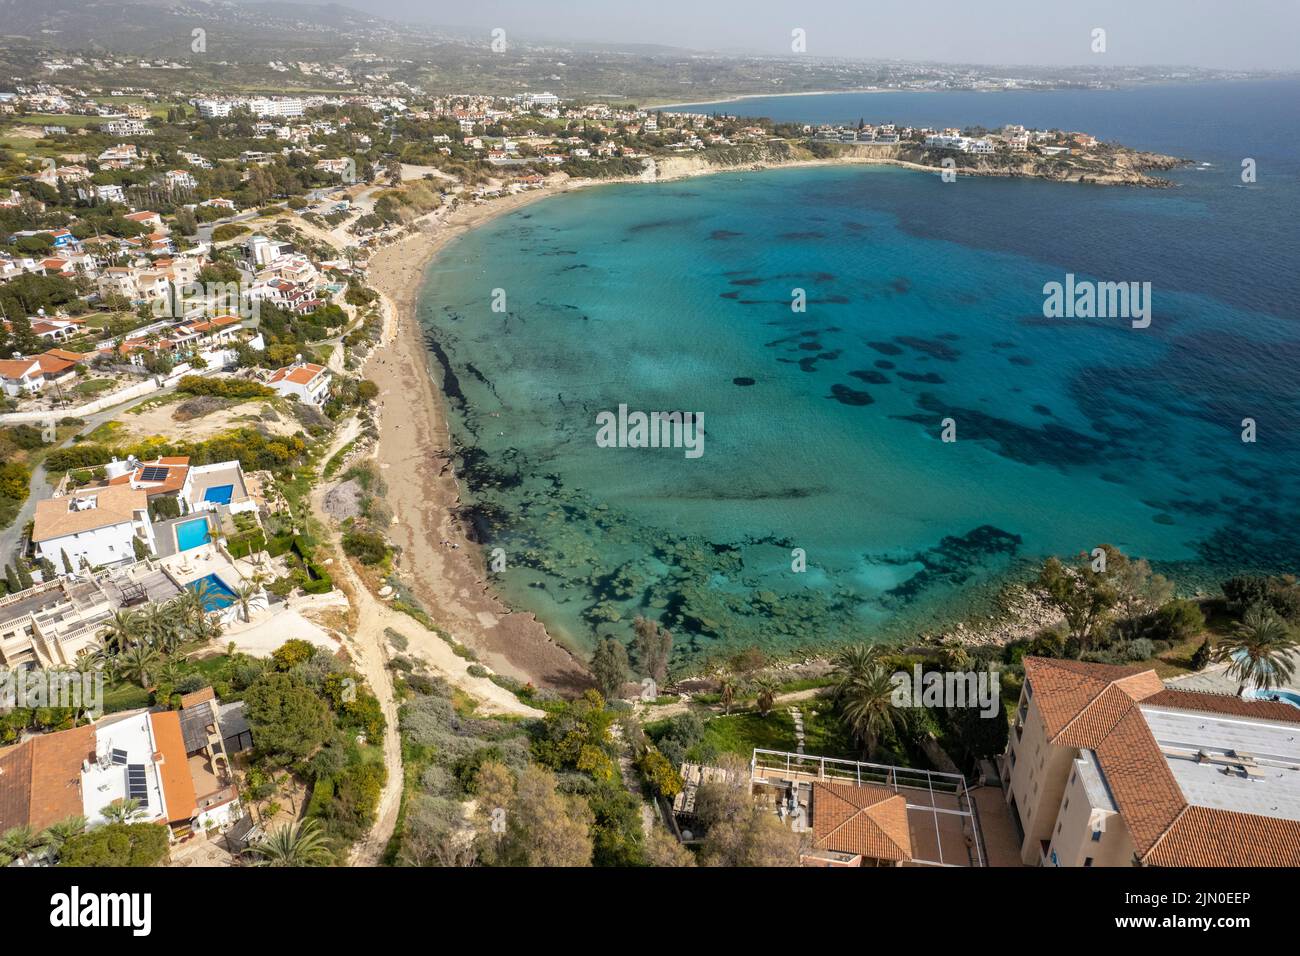 Strand der Coral Bay aus der Luft gesehen, Zypern, Europa  |   Aerial view of Coral Bay beach, Cyprus, Europe Stock Photo